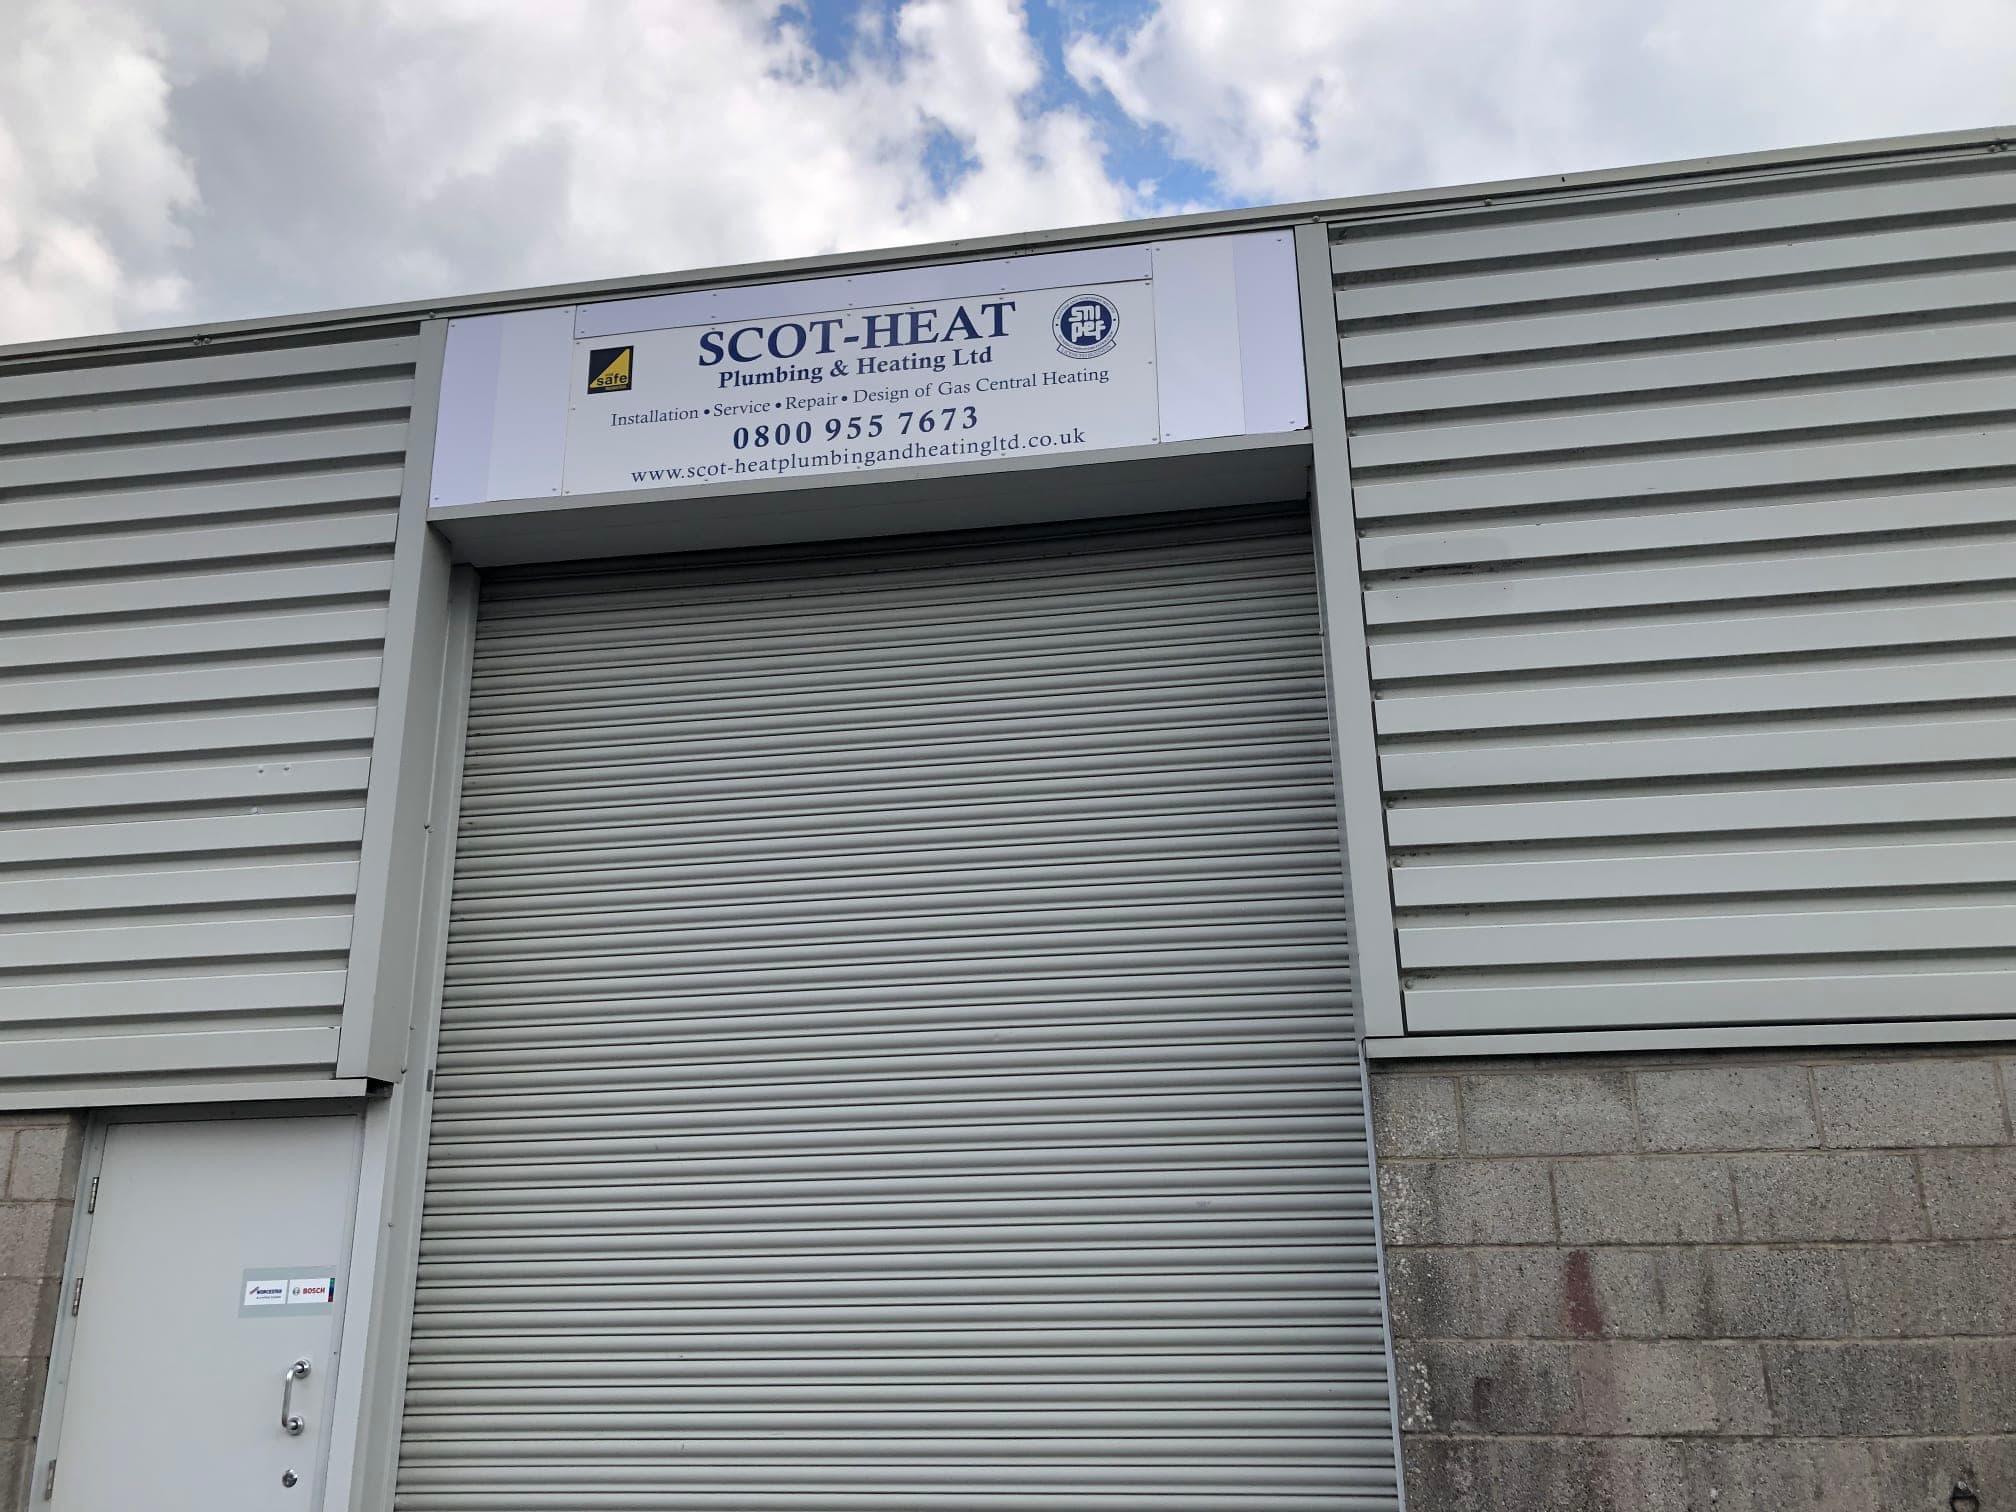 Images Scot-Heat Plumbing & Heating Ltd